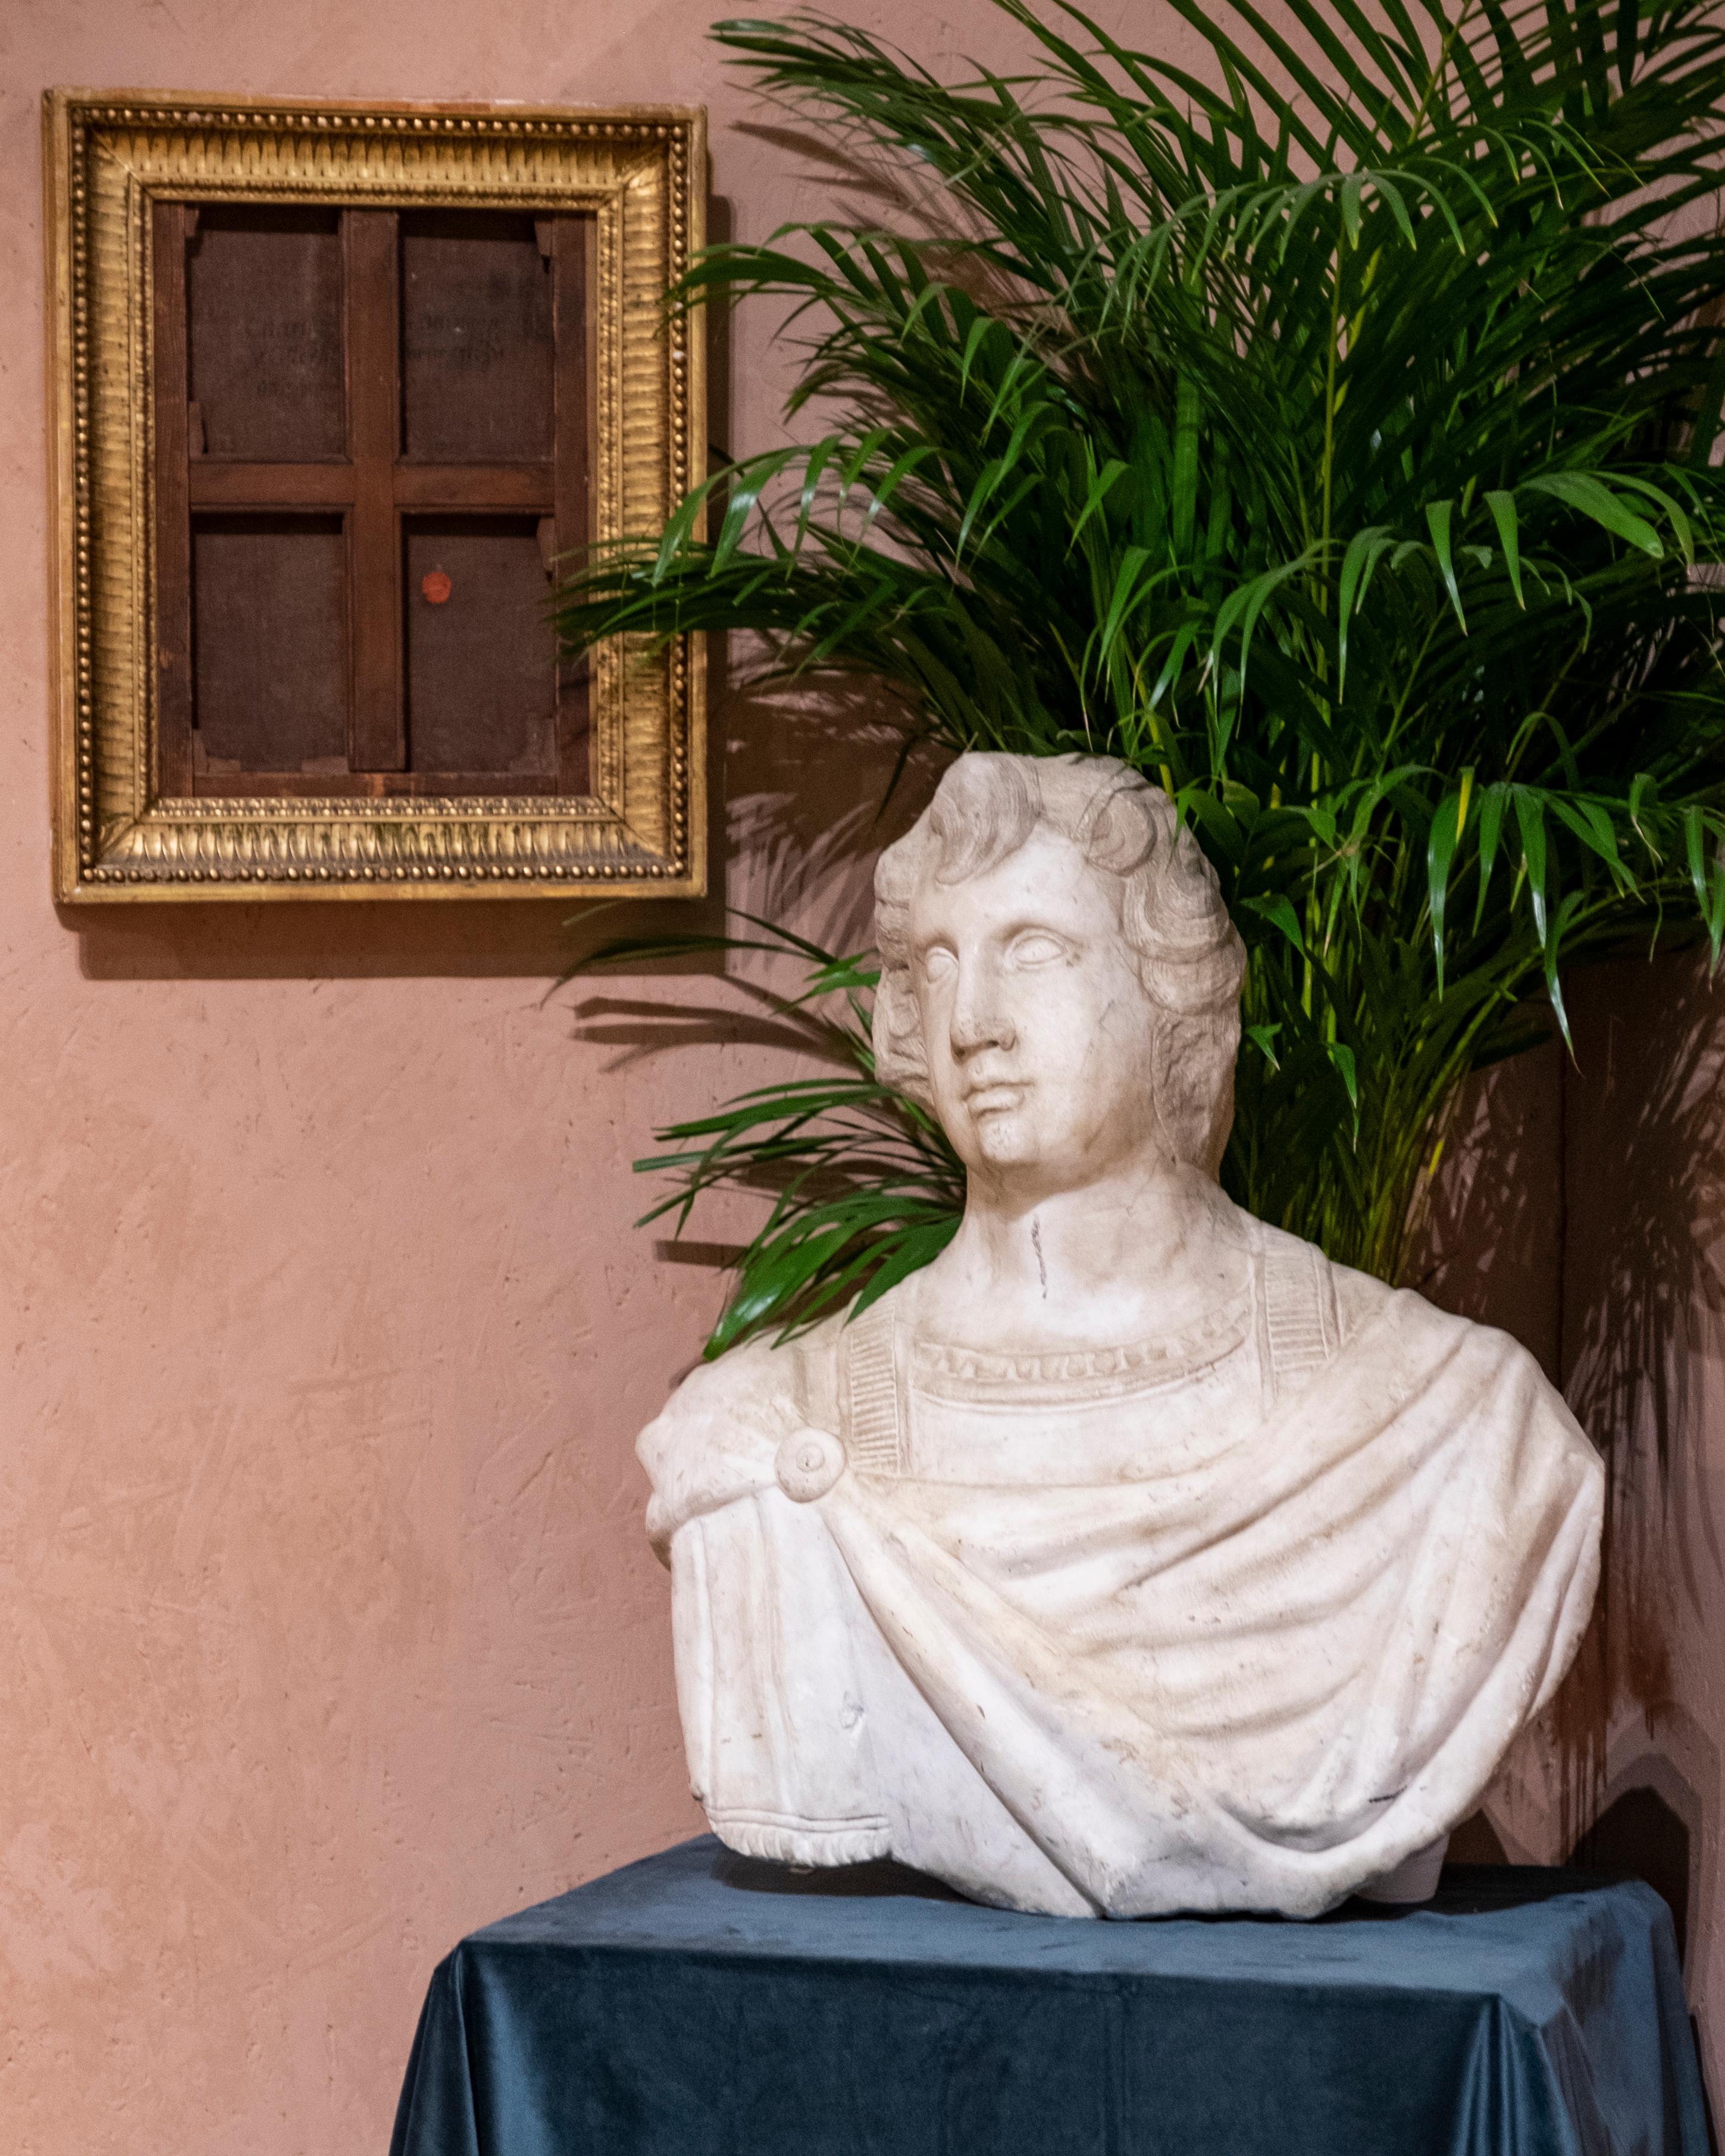 Impressionnant buste en marbre grandeur nature d'un homme romain, sculpté à la main au début du 18e siècle, vers 1700 en Italie, peut-être plus ancien. 

L'état est bon, avec de petits éclats et entailles correspondant à l'âge et à l'utilisation.